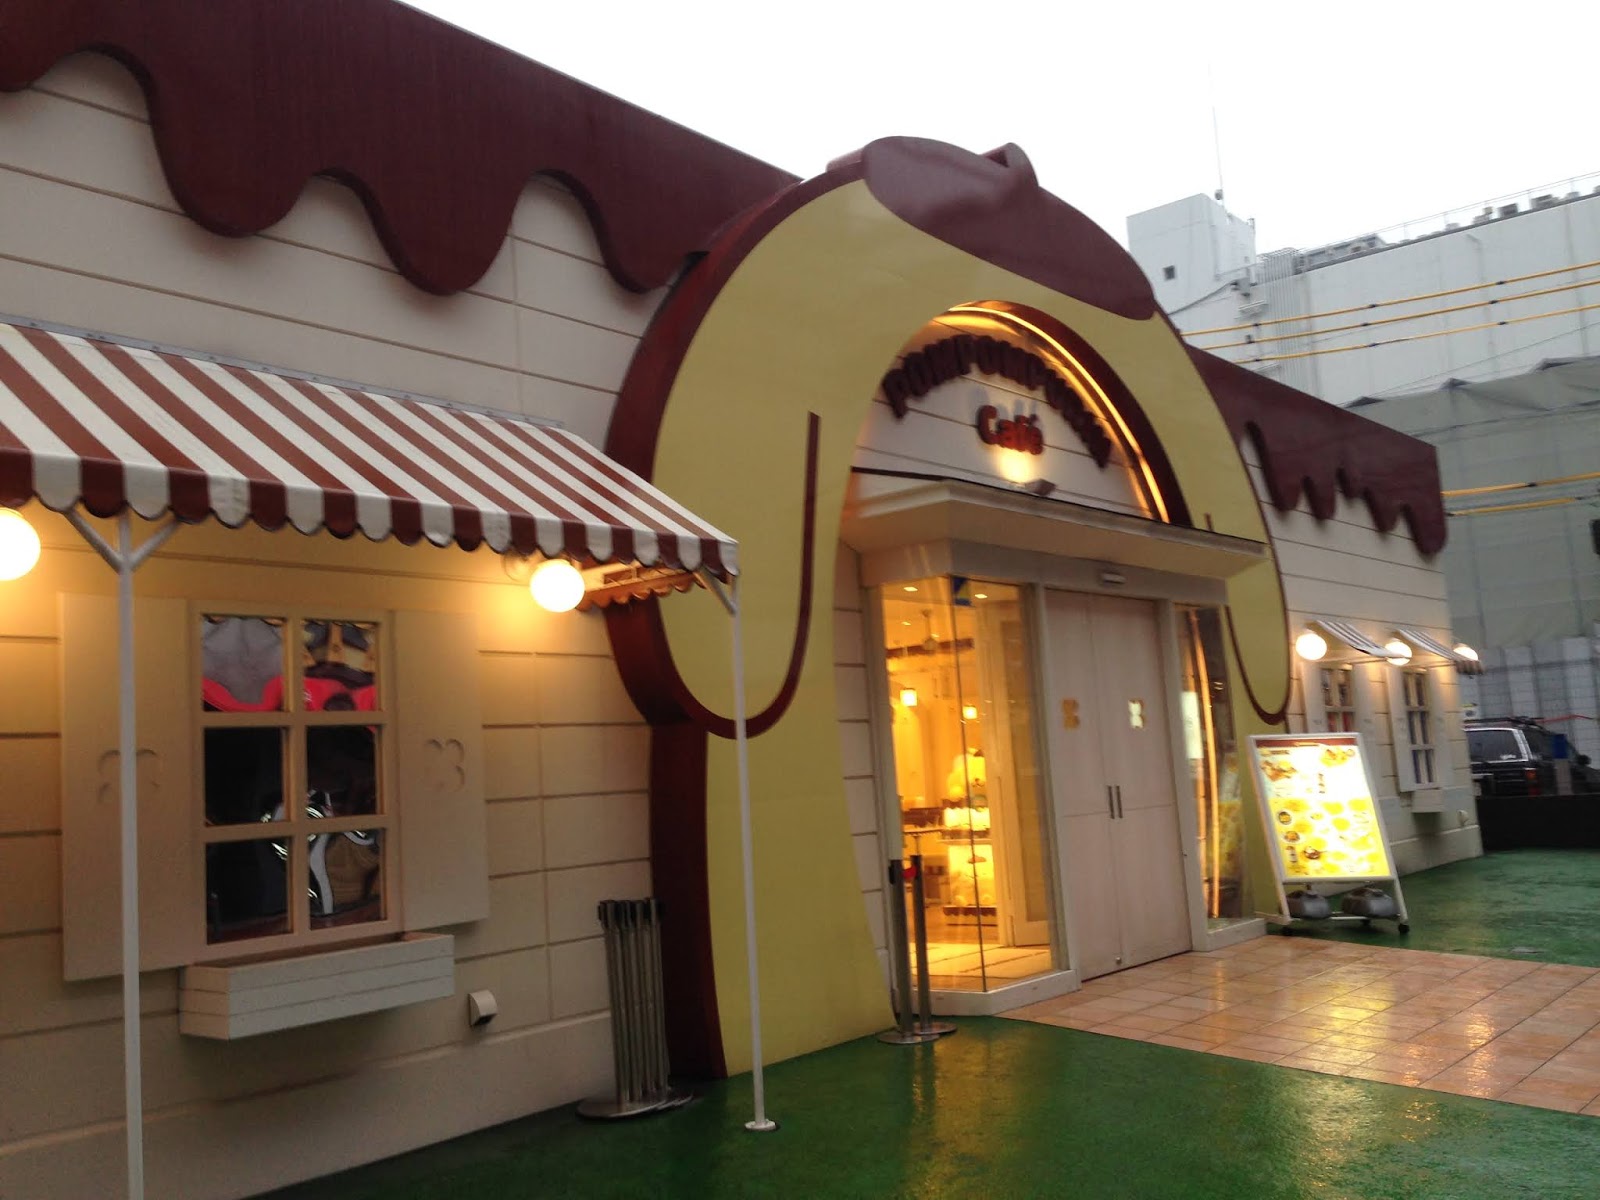 POMPOMPURIN Cafe Osaka